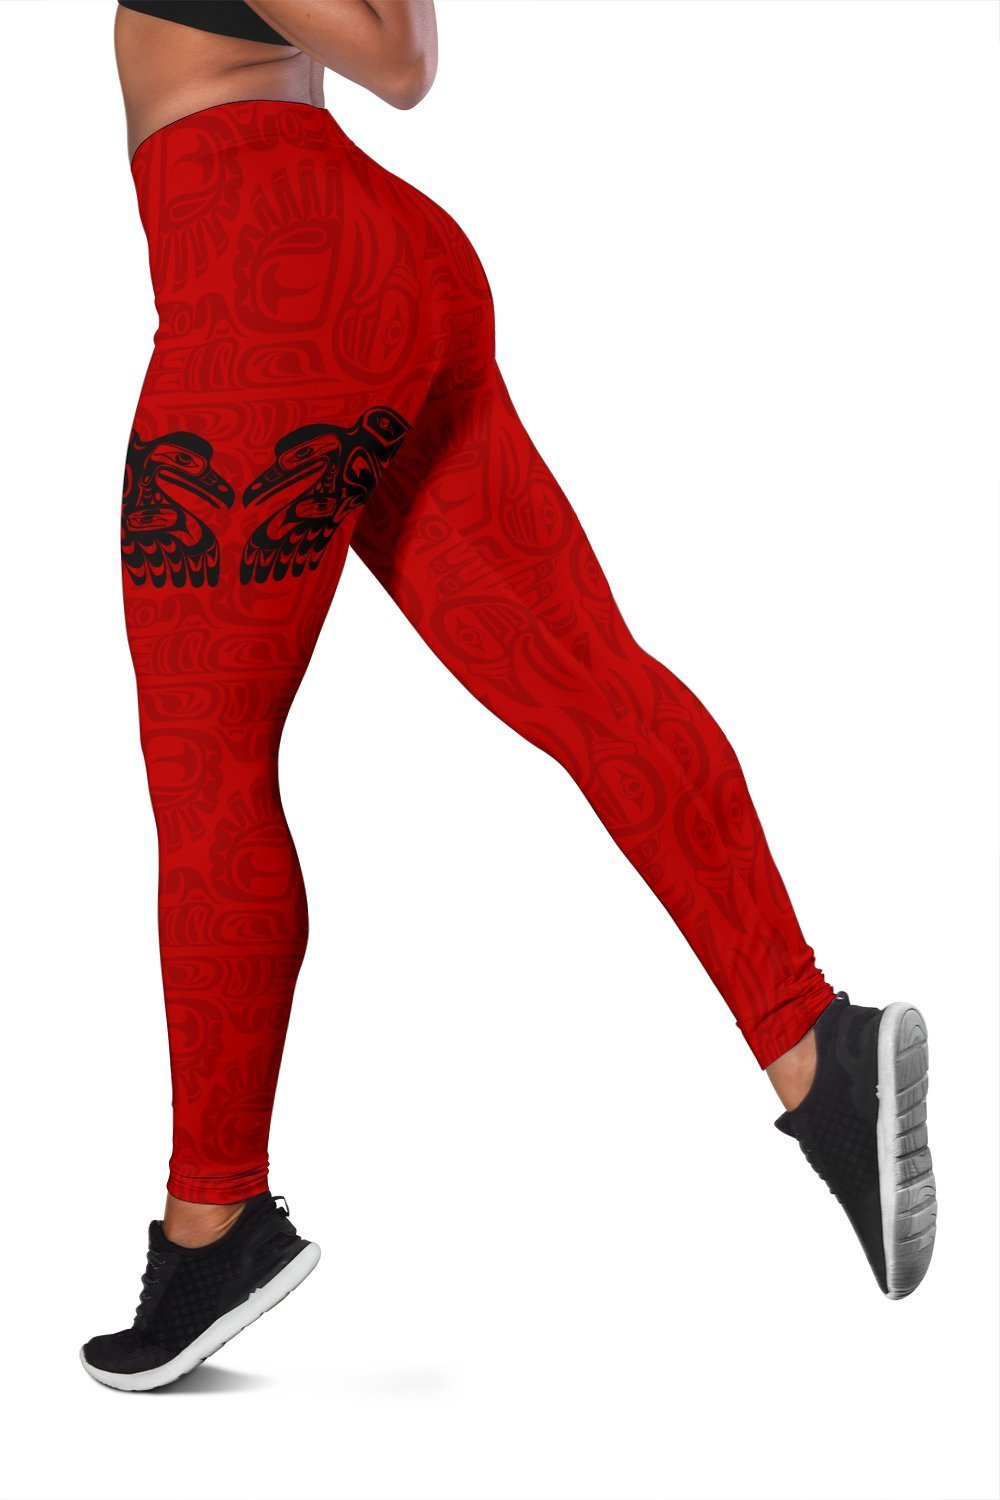 canada-makah-womens-leggings-red